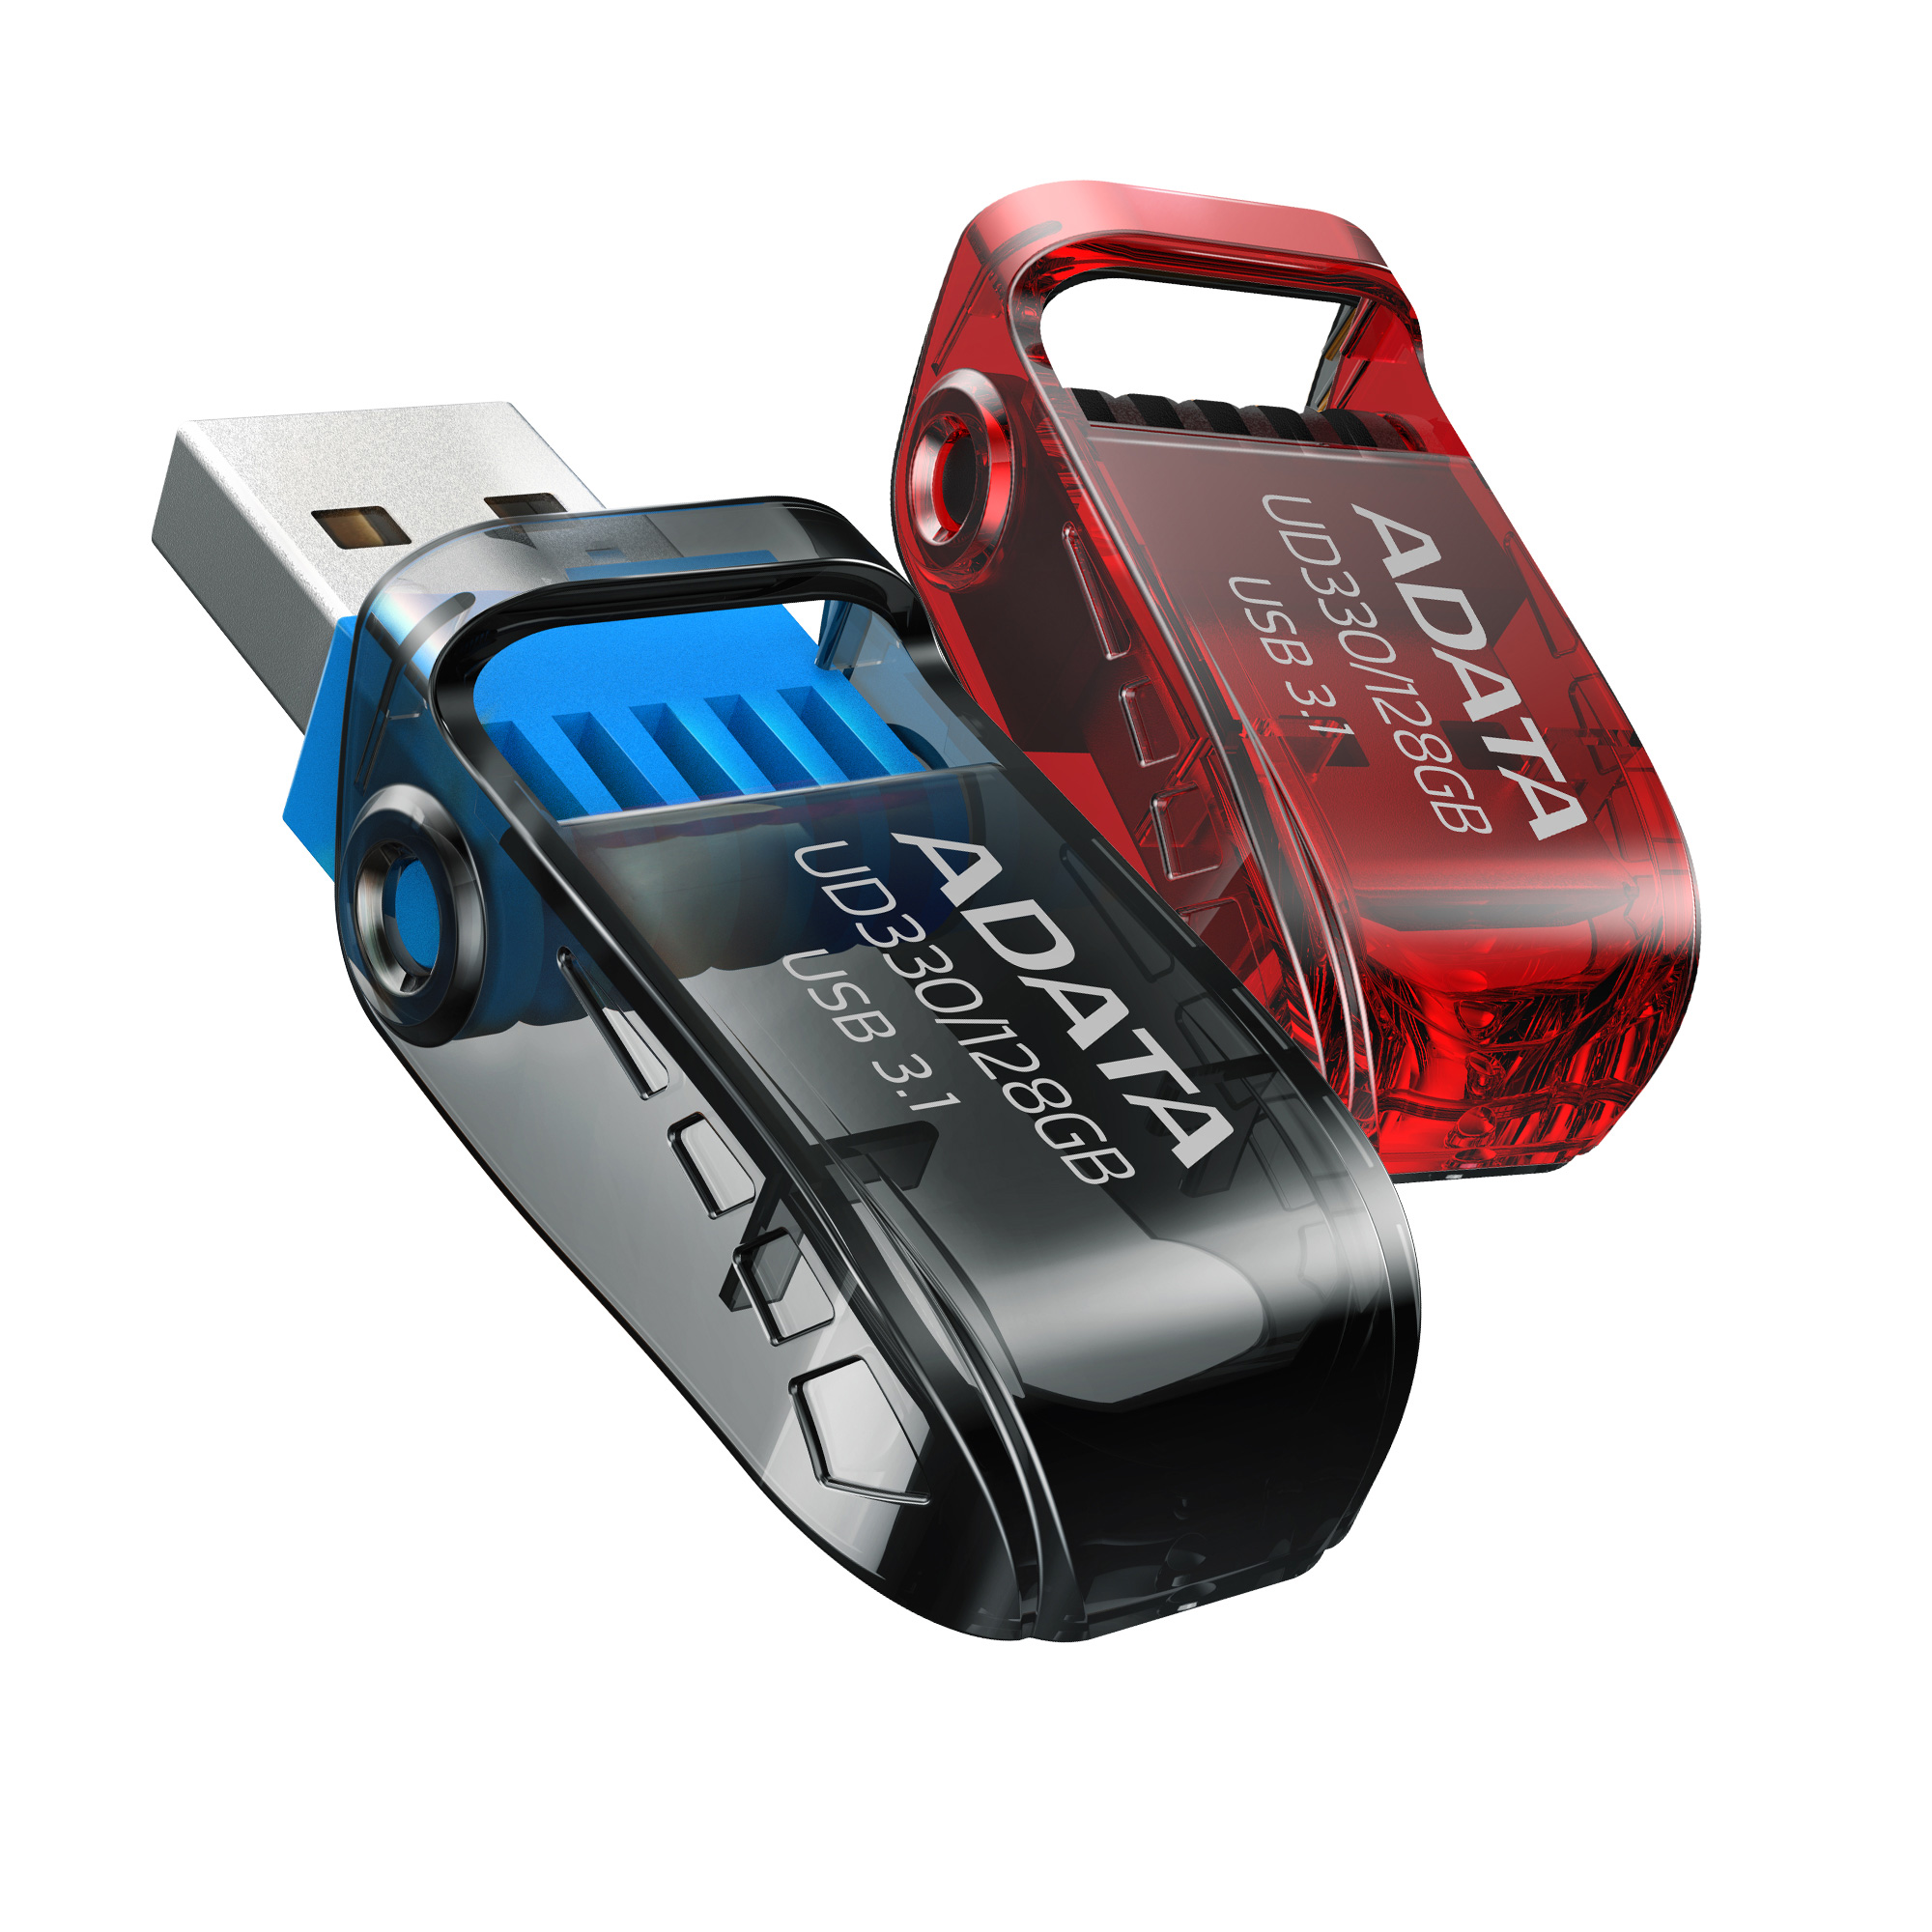 ADATA lanseaza stick-urile de memorie USB UD230 si UD330 Un design ergonomic si modern care ofera portabilitate excelenta